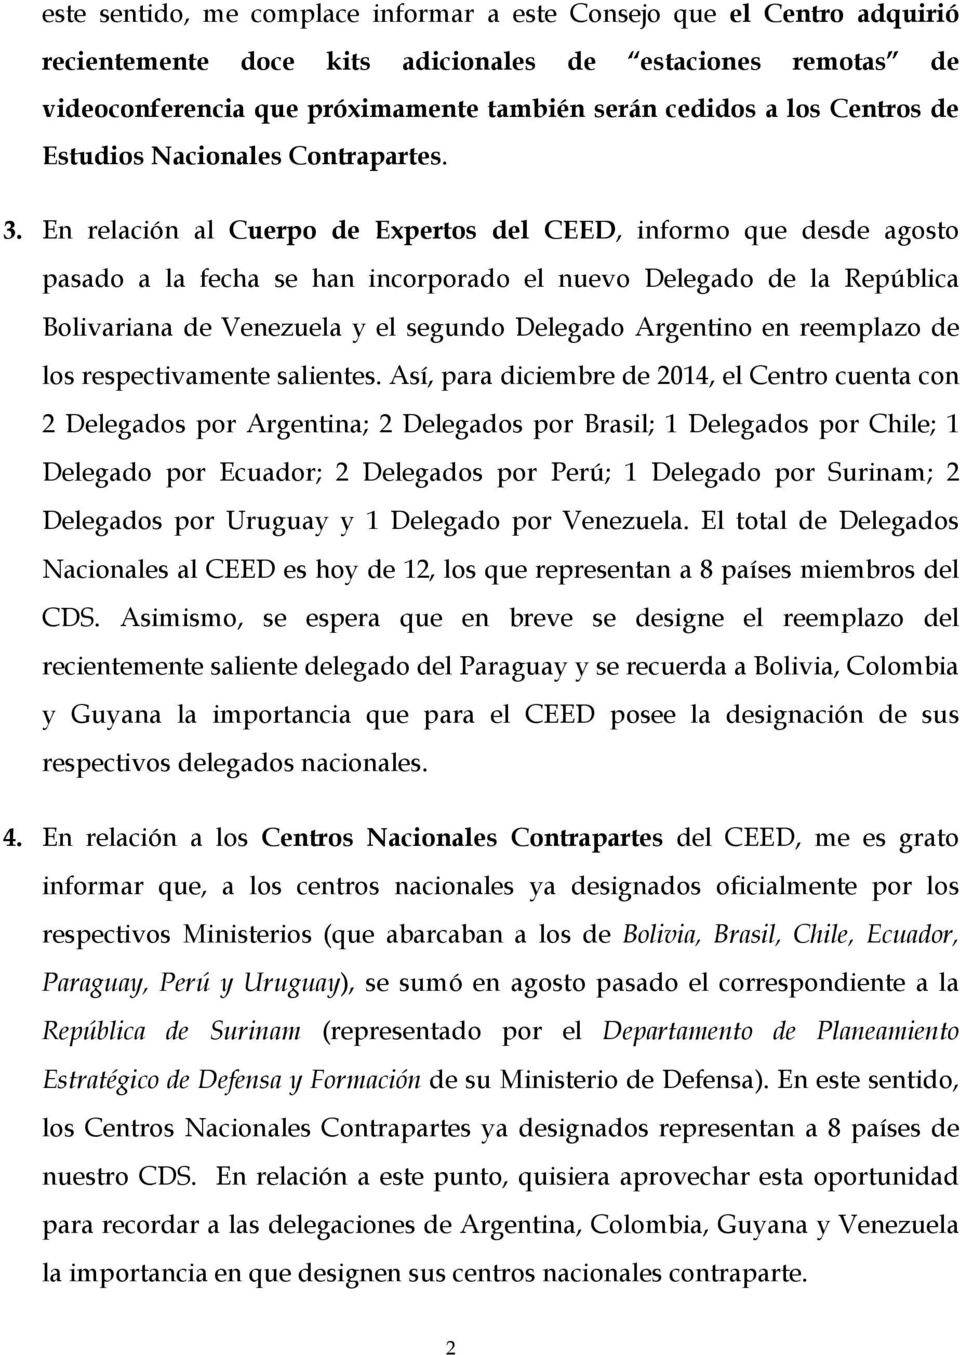 En relación al Cuerpo de Expertos del CEED, informo que desde agosto pasado a la fecha se han incorporado el nuevo Delegado de la República Bolivariana de Venezuela y el segundo Delegado Argentino en